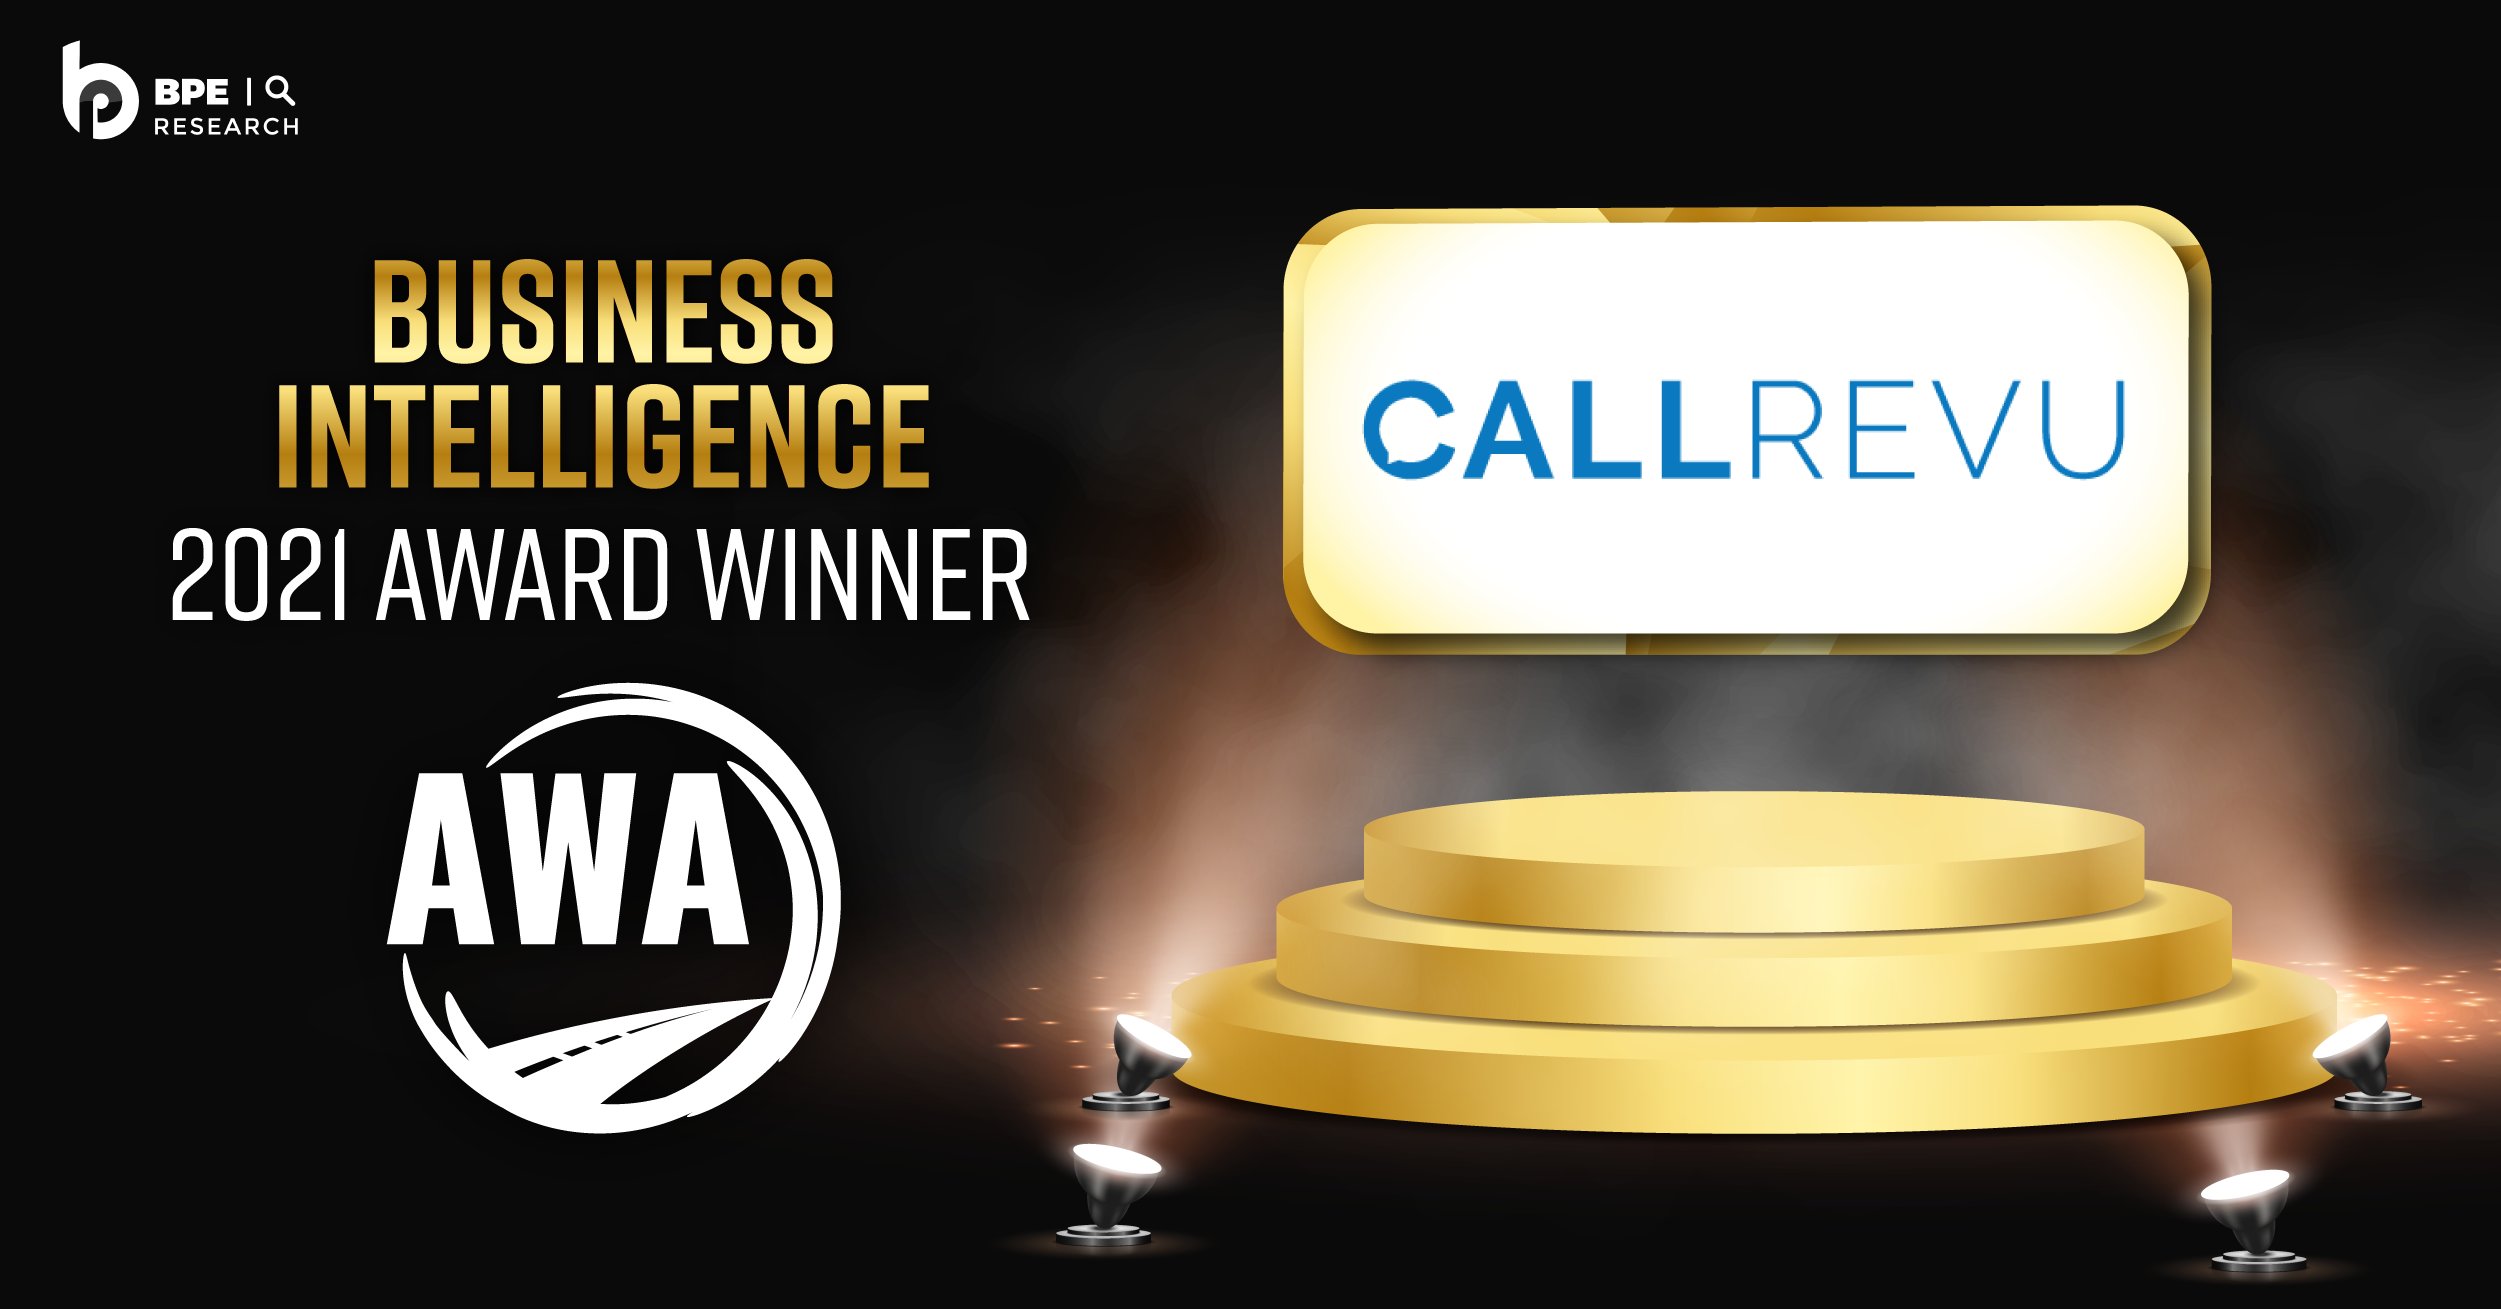 CallRevu Announced as a Winner of the 2021 AWA Business Intelligence Award